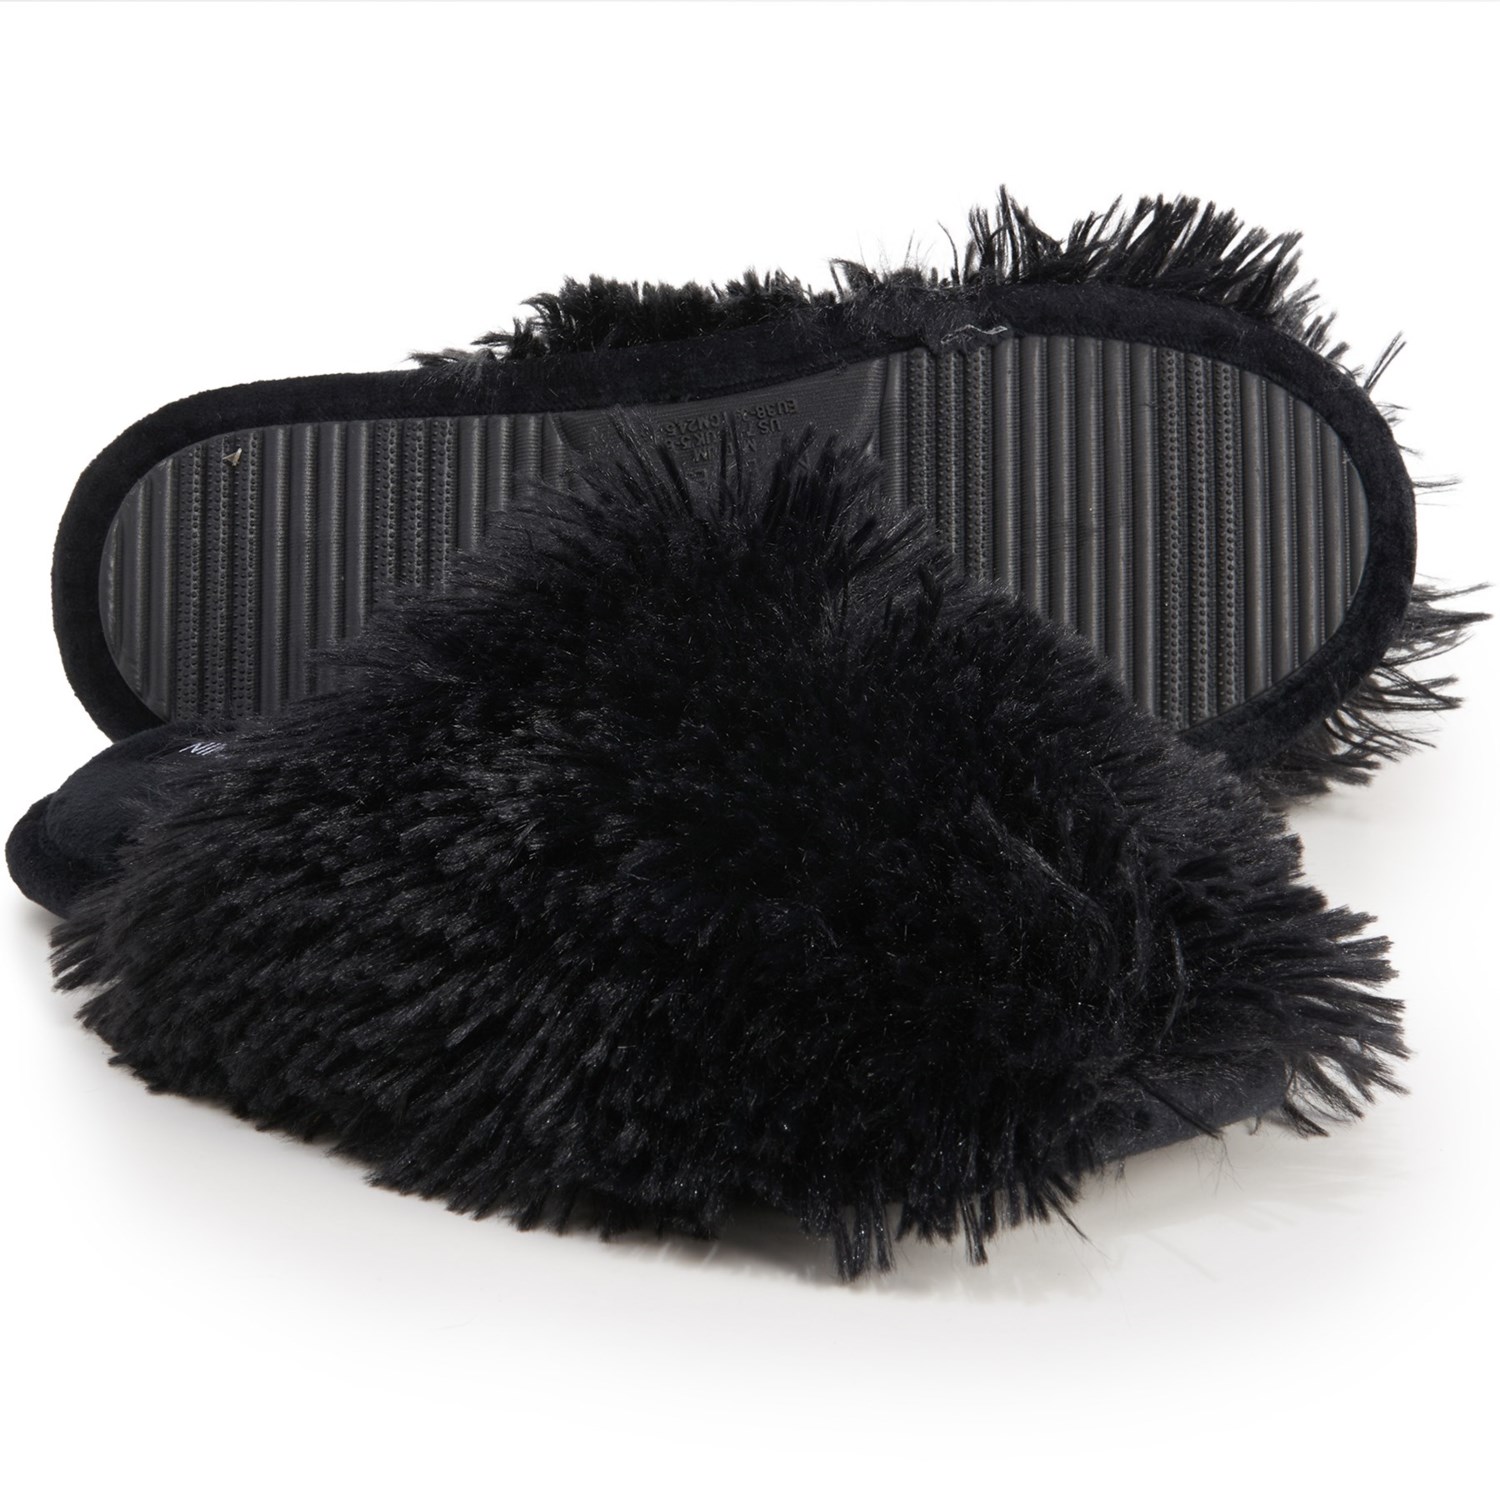 fluffy slippers black